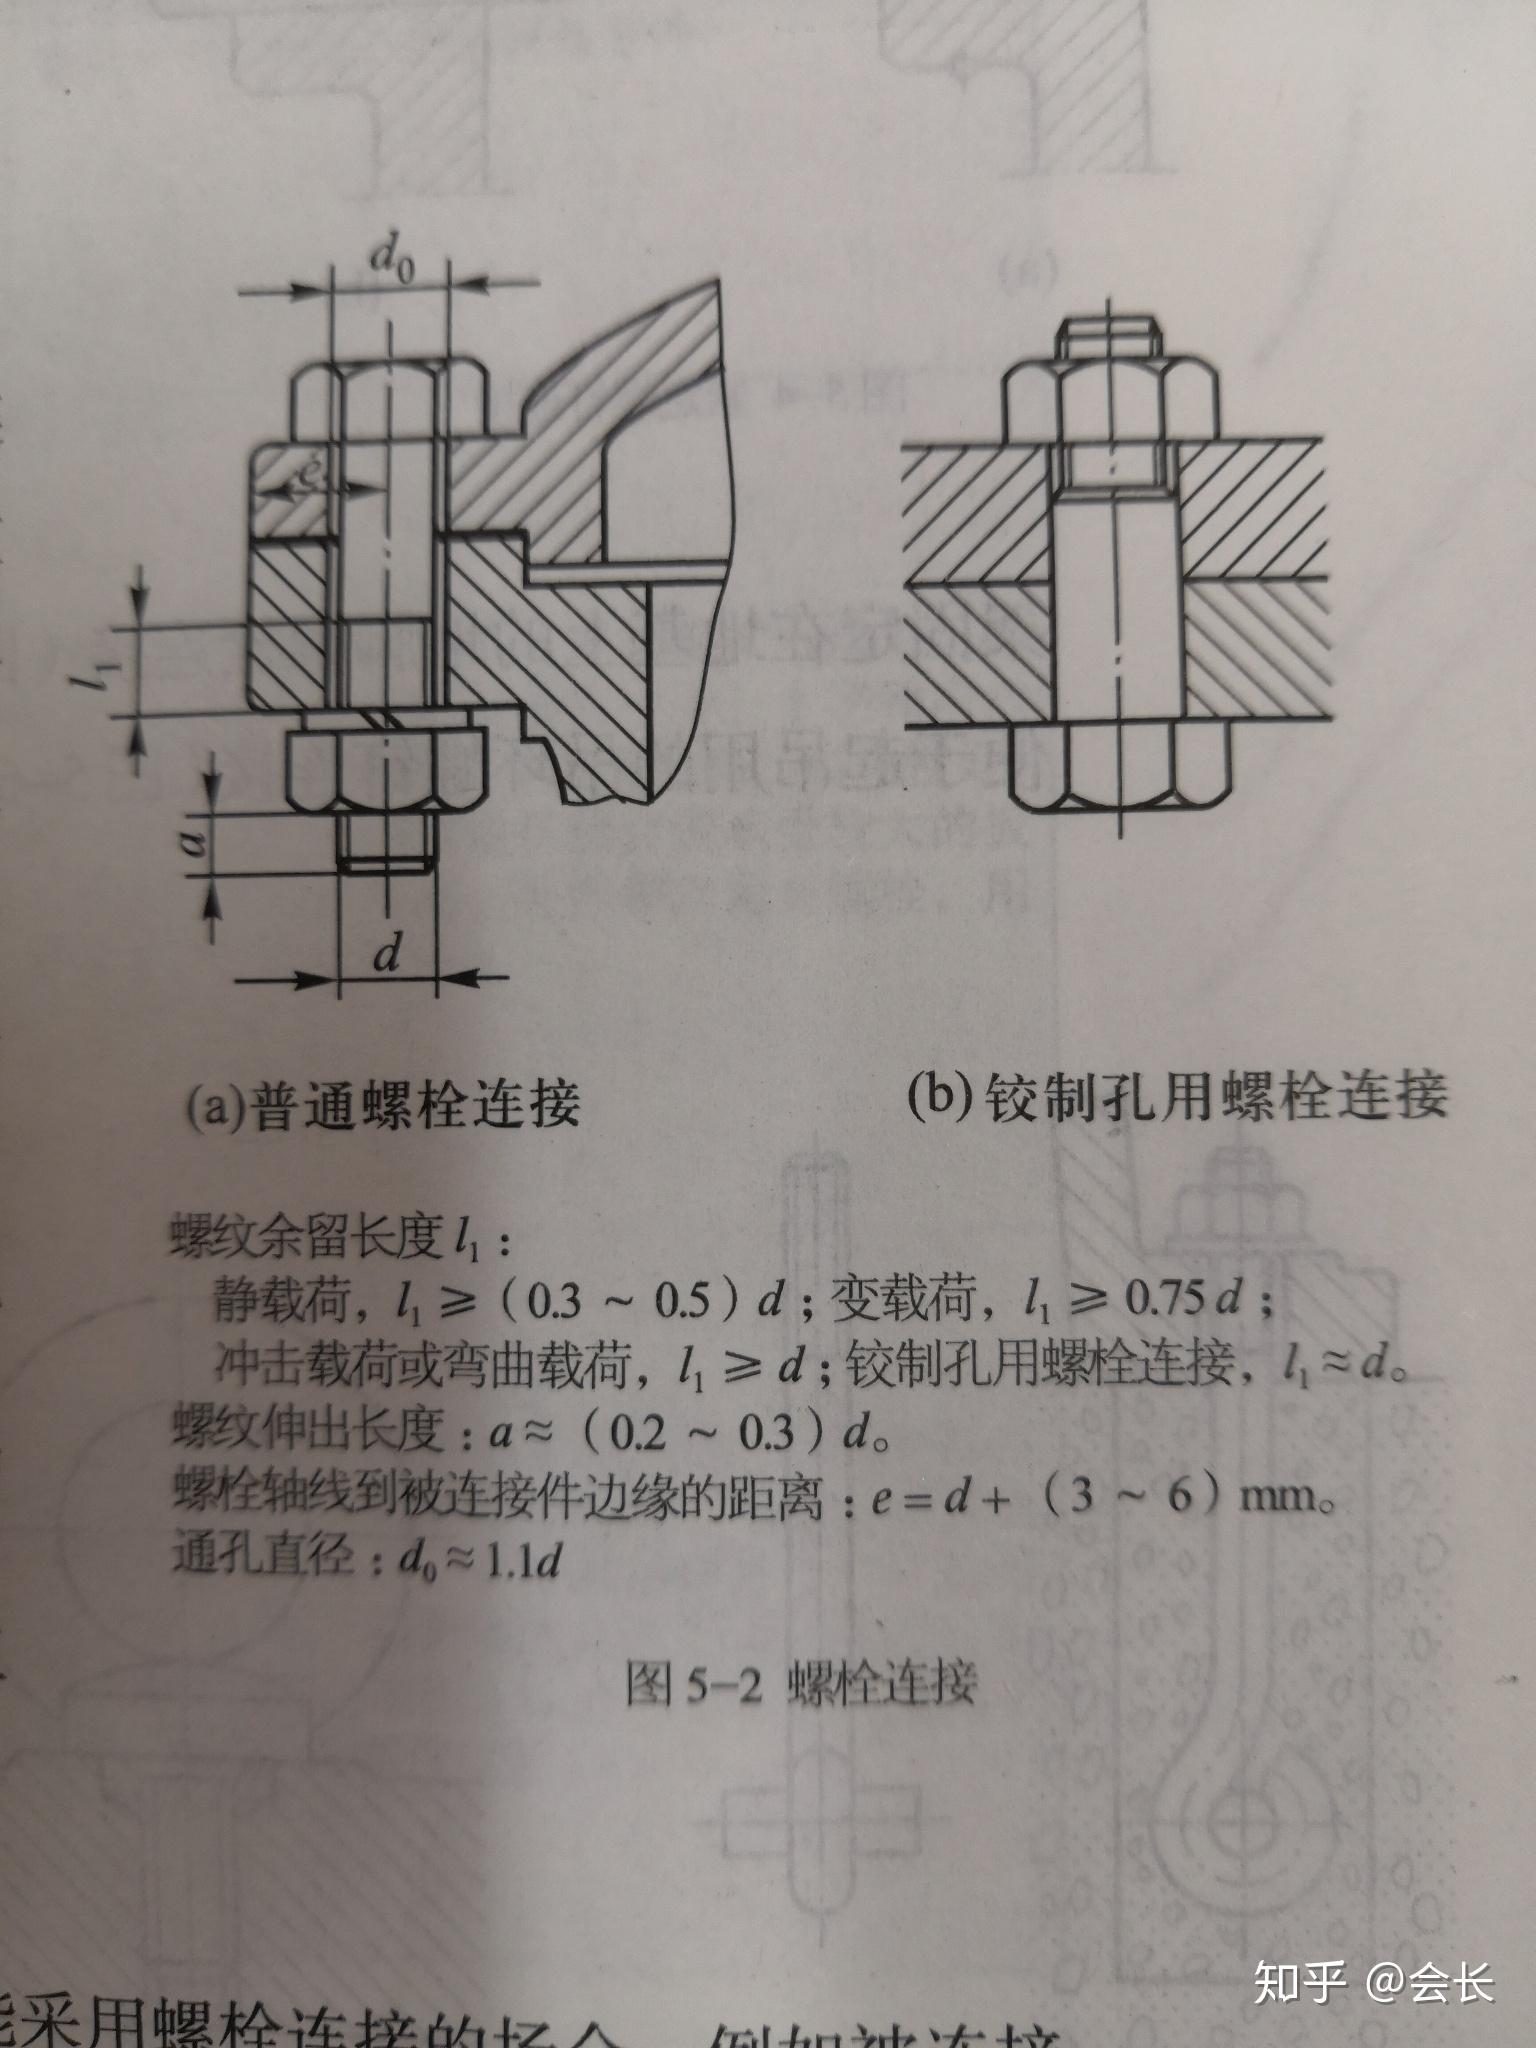 普通螺栓连接和铰制孔螺栓连接有什么不同? 